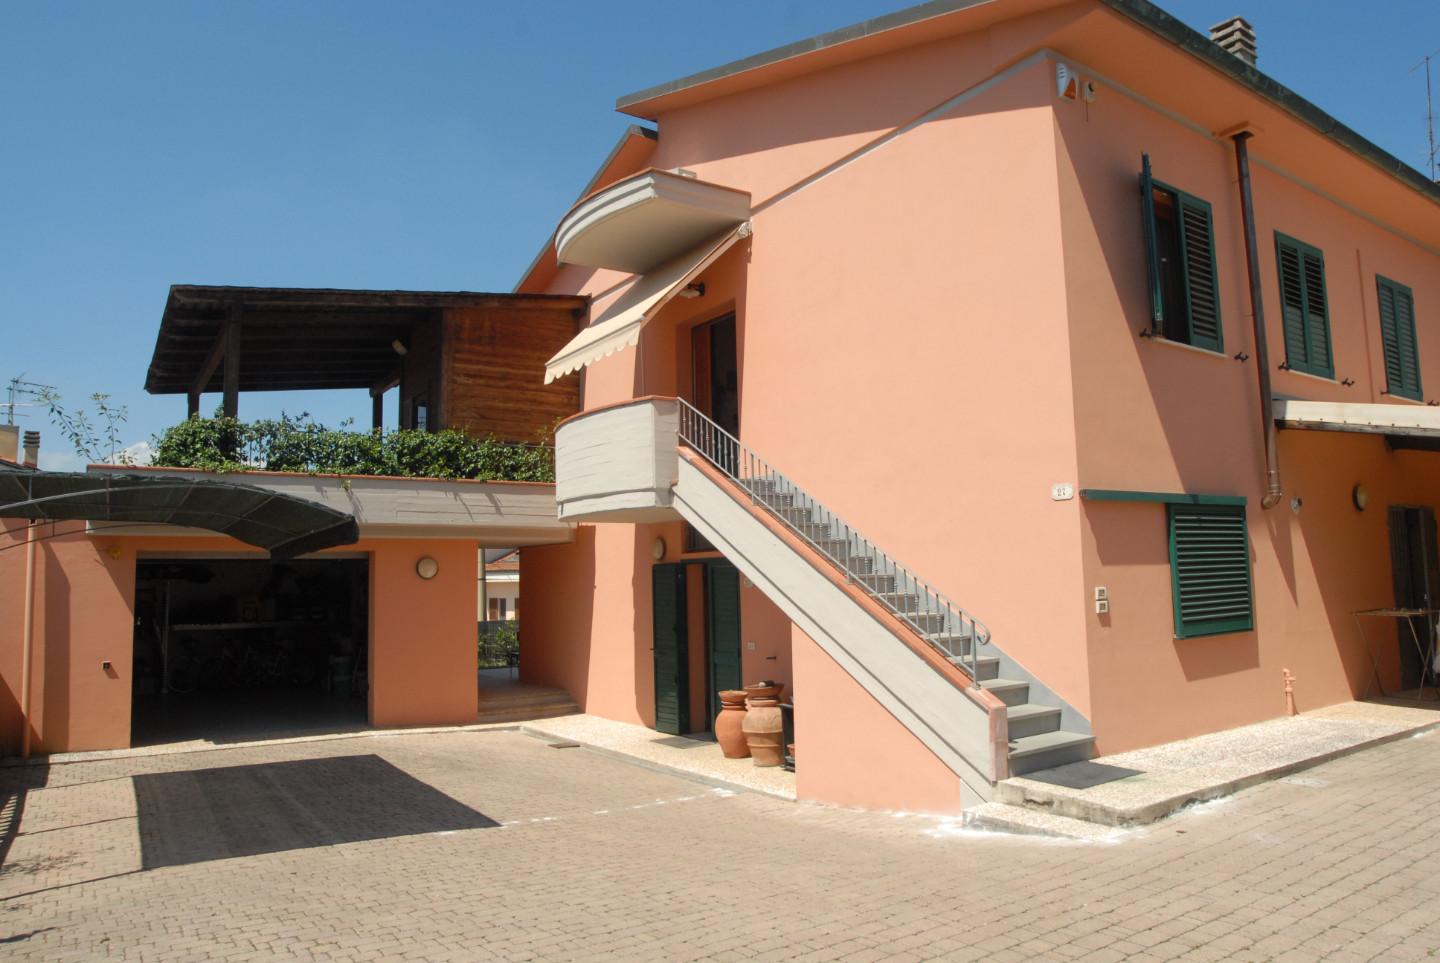 Single-family house for sale in Montopoli in Val d'Arno (PI)